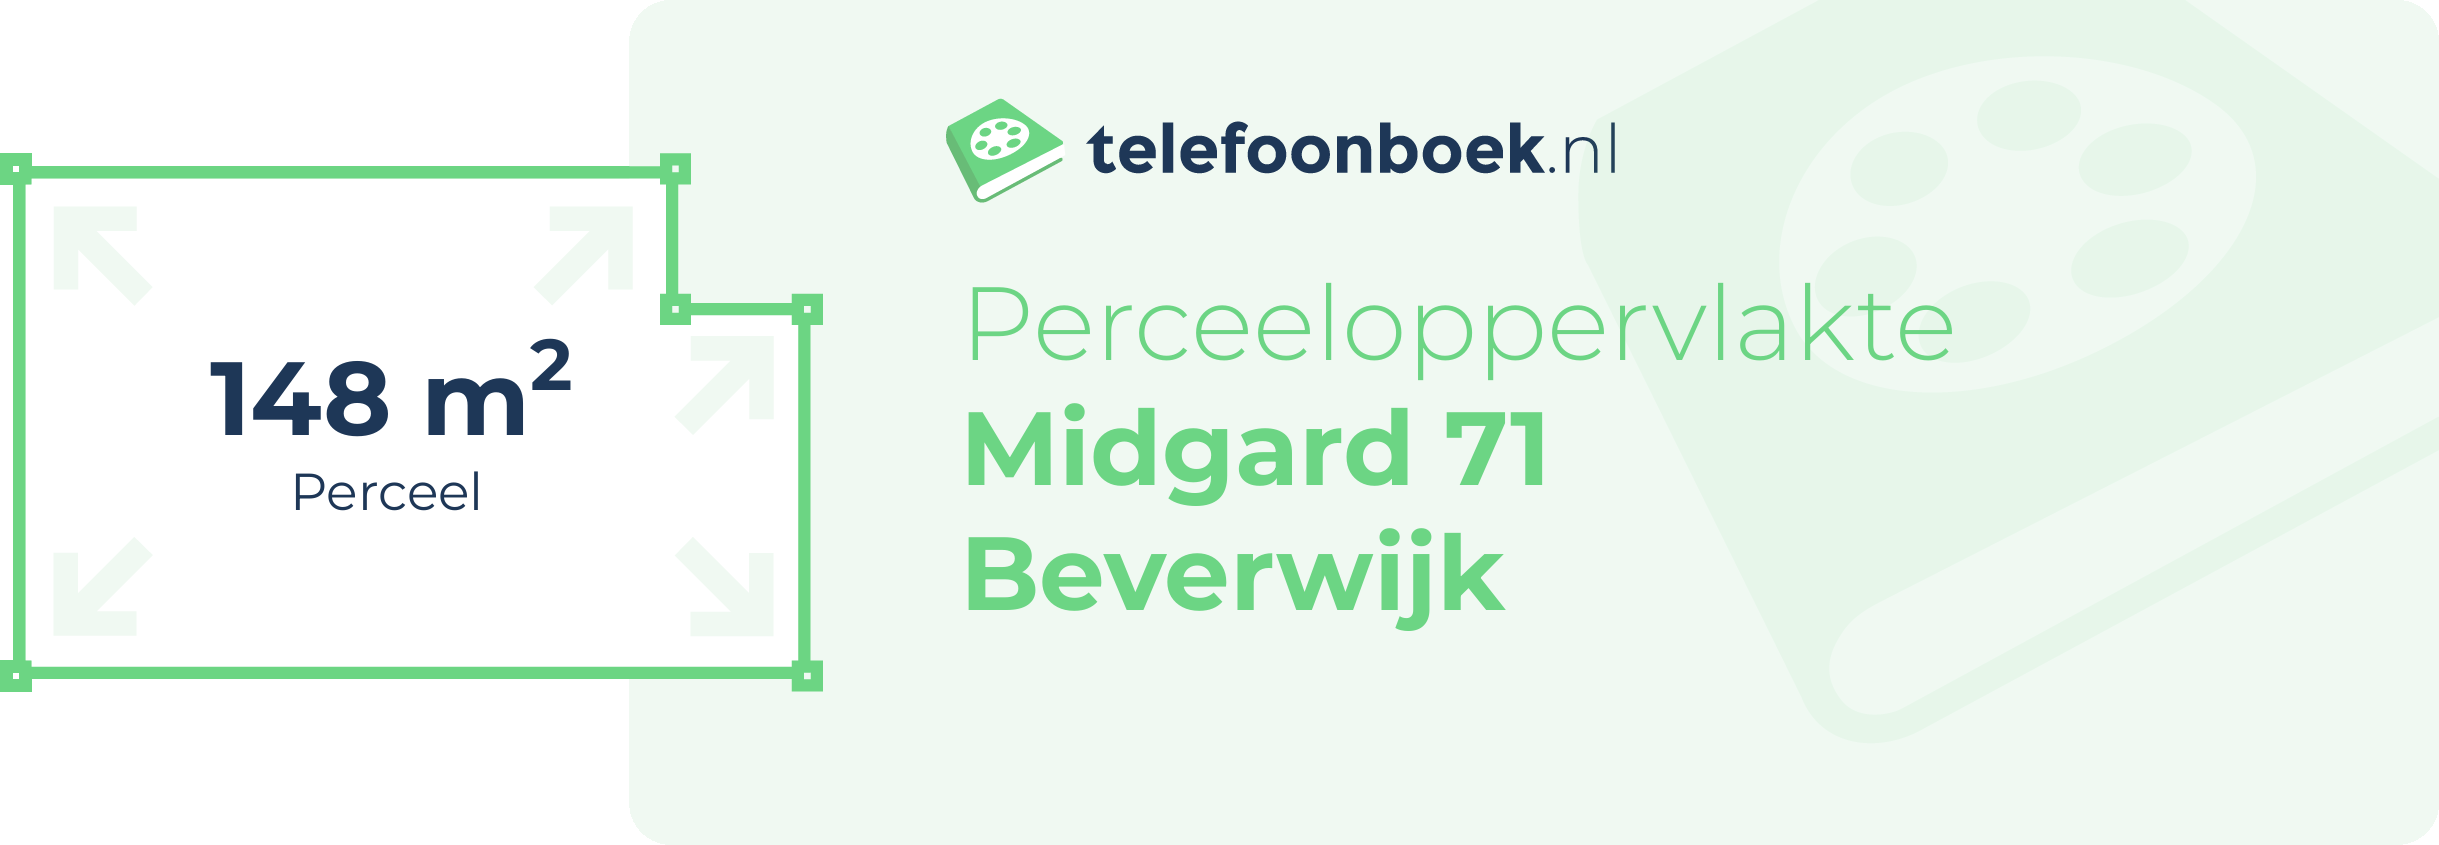 Perceeloppervlakte Midgard 71 Beverwijk